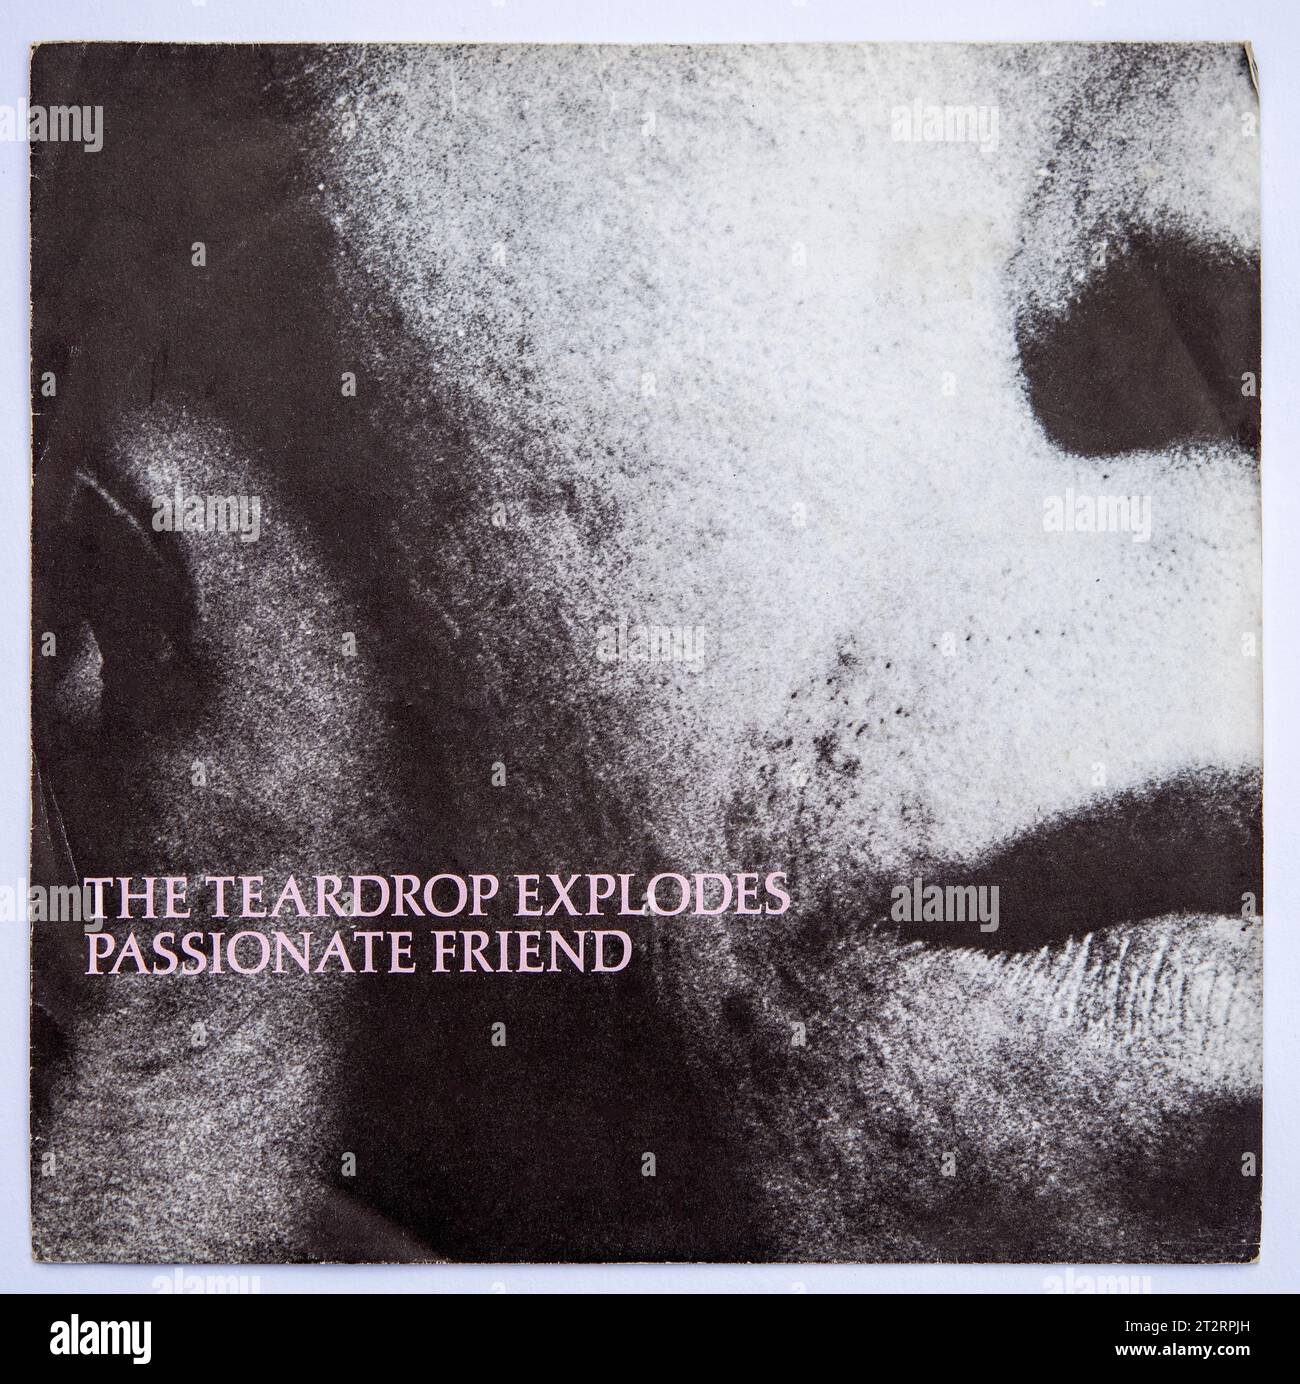 Copertina della versione single da sette pollici di Passion Friend by the Teardrop Explodes, pubblicata nel 1981 Foto Stock